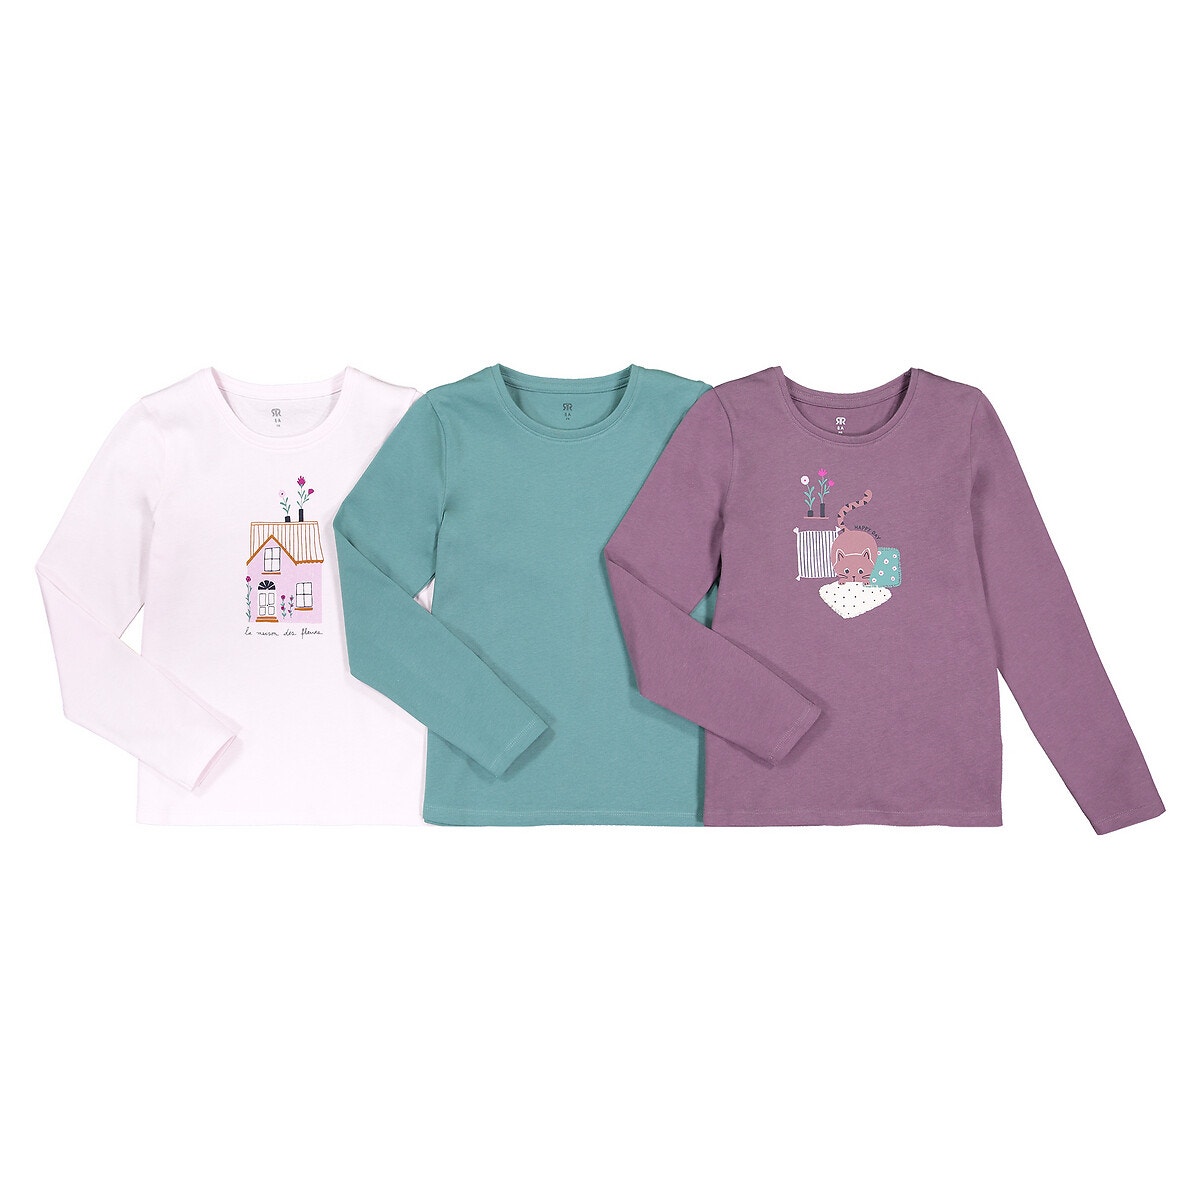 ΠΑΙΔΙ | Μπλούζες & Πουκάμισα | Μπλούζες Σετ 3 μπλούζες από οργανικό βαμβάκι, 3-12 ετών